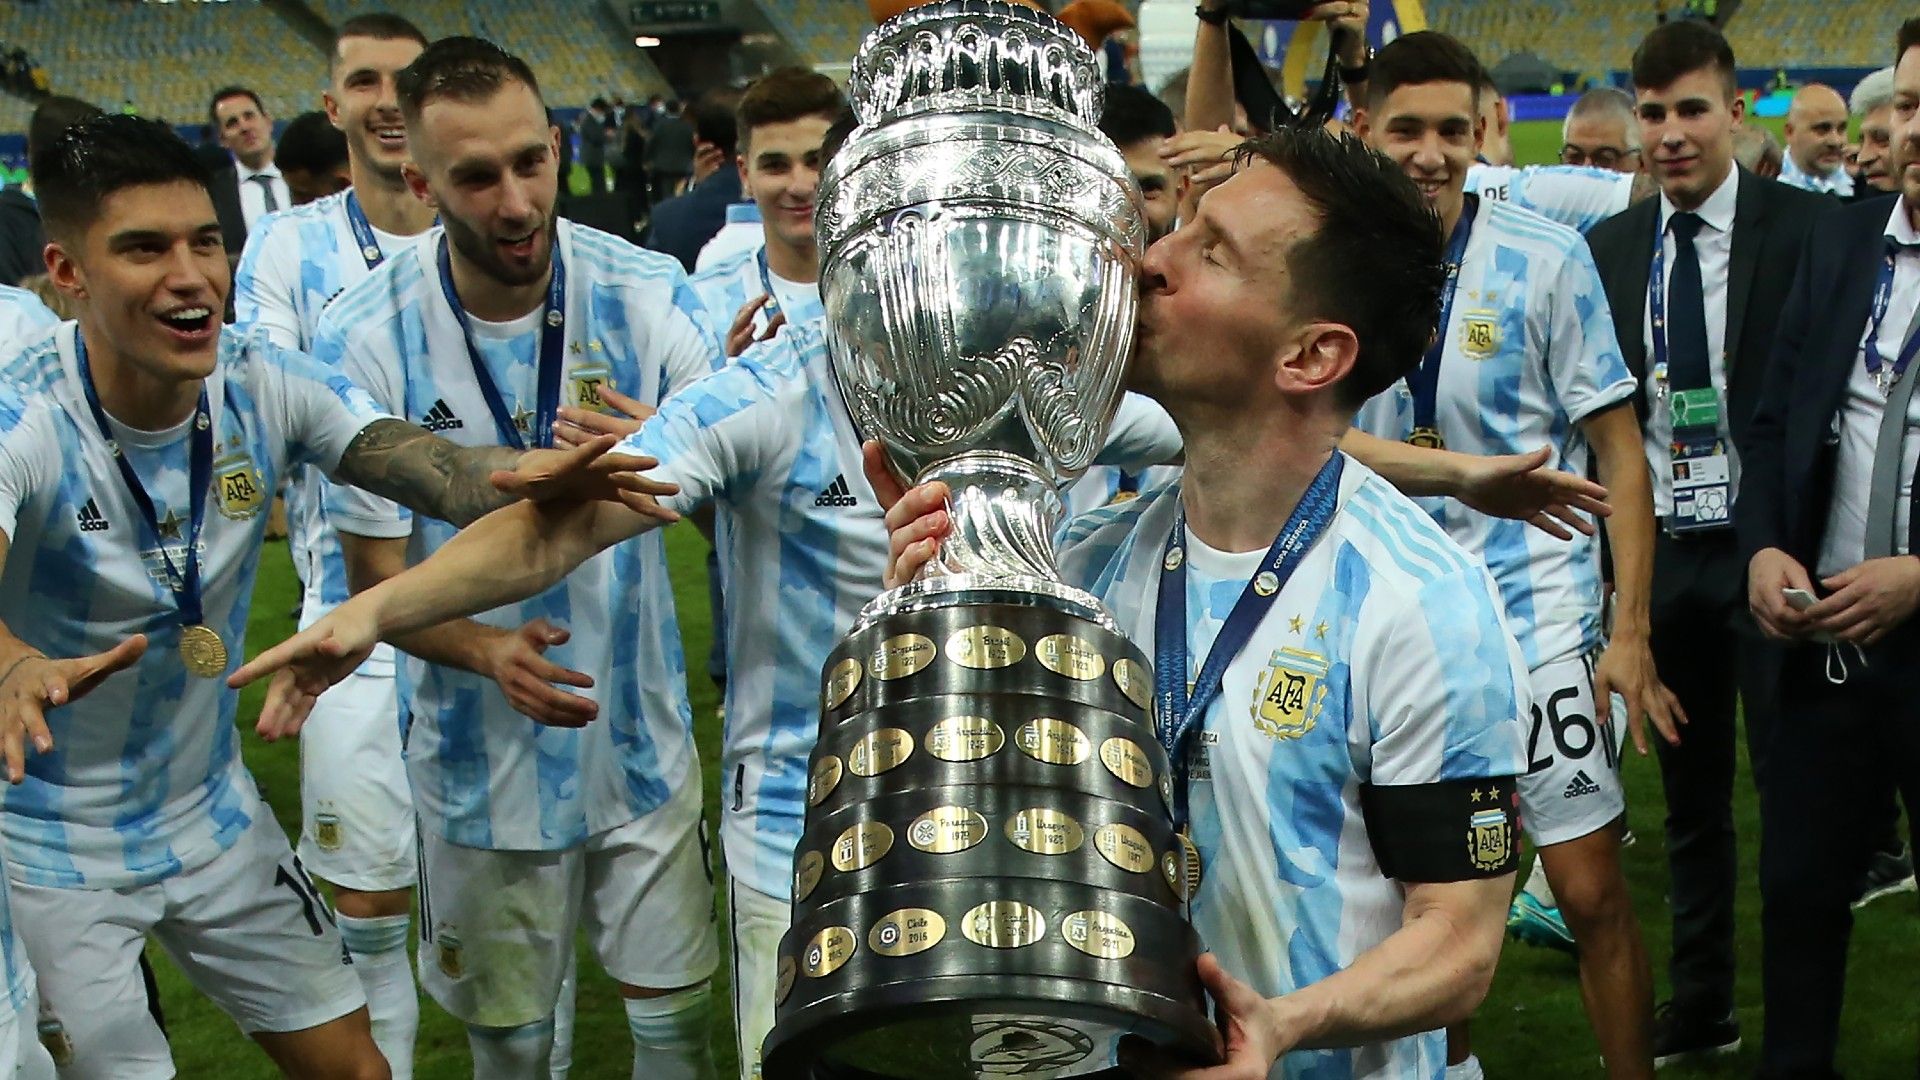 Copa America là giải đấu bóng đá lớn nhất ở khu vực Nam Mỹ và hấp dẫn không kém gì World Cup! Tham gia bức ảnh này để cùng theo dõi những trận đấu đầy kịch tính và những pha bóng đẹp mắt của các đội trong giải đấu này. Hãy cùng đón chờ xem ai sẽ vô địch Copa America mùa này!